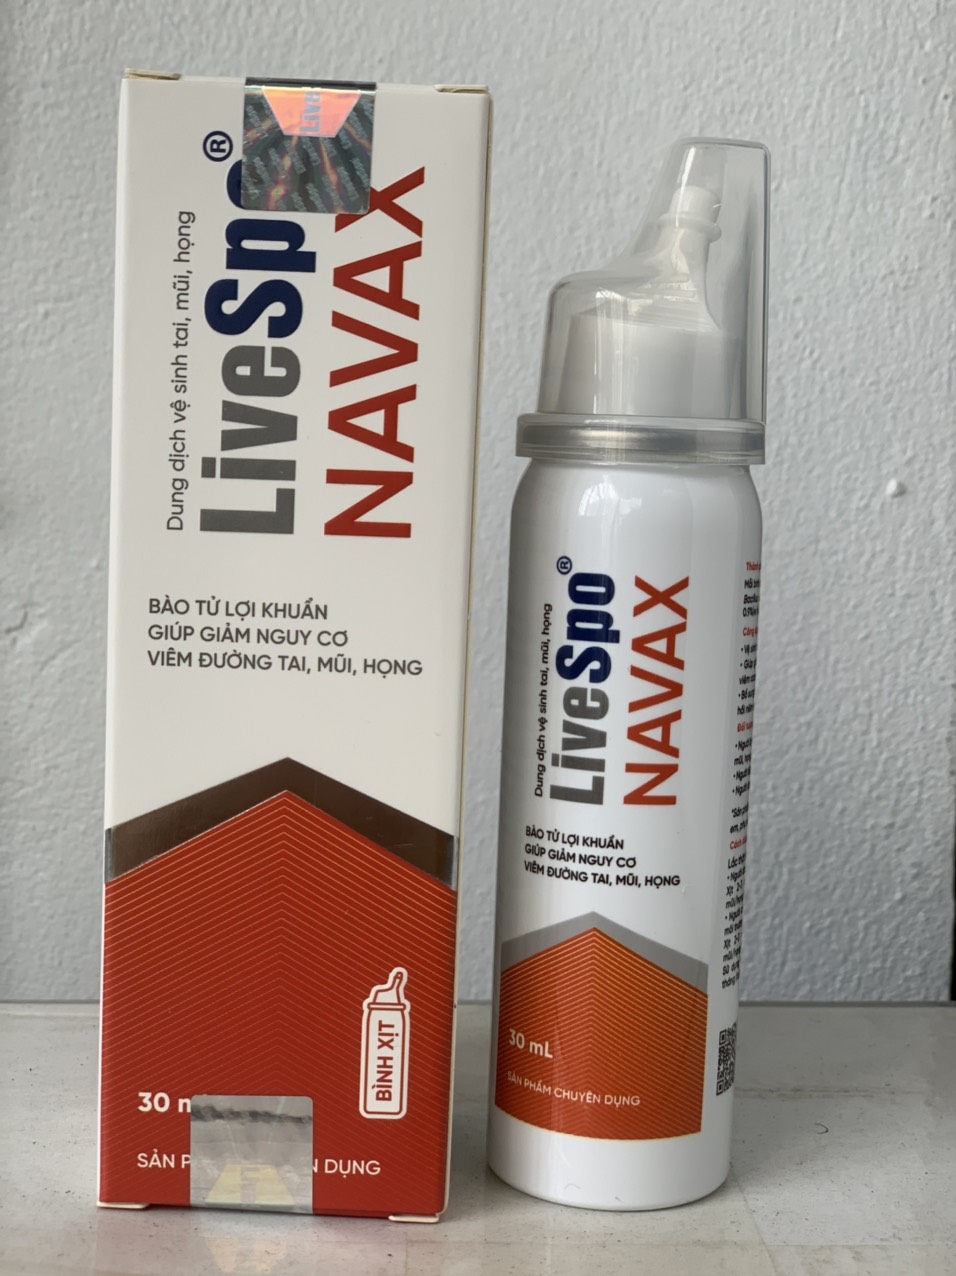 Xịt Navax chuyên dụng dạng chai xịt nhôm 30ml bảo vệ mũi họng hệ hô hấp